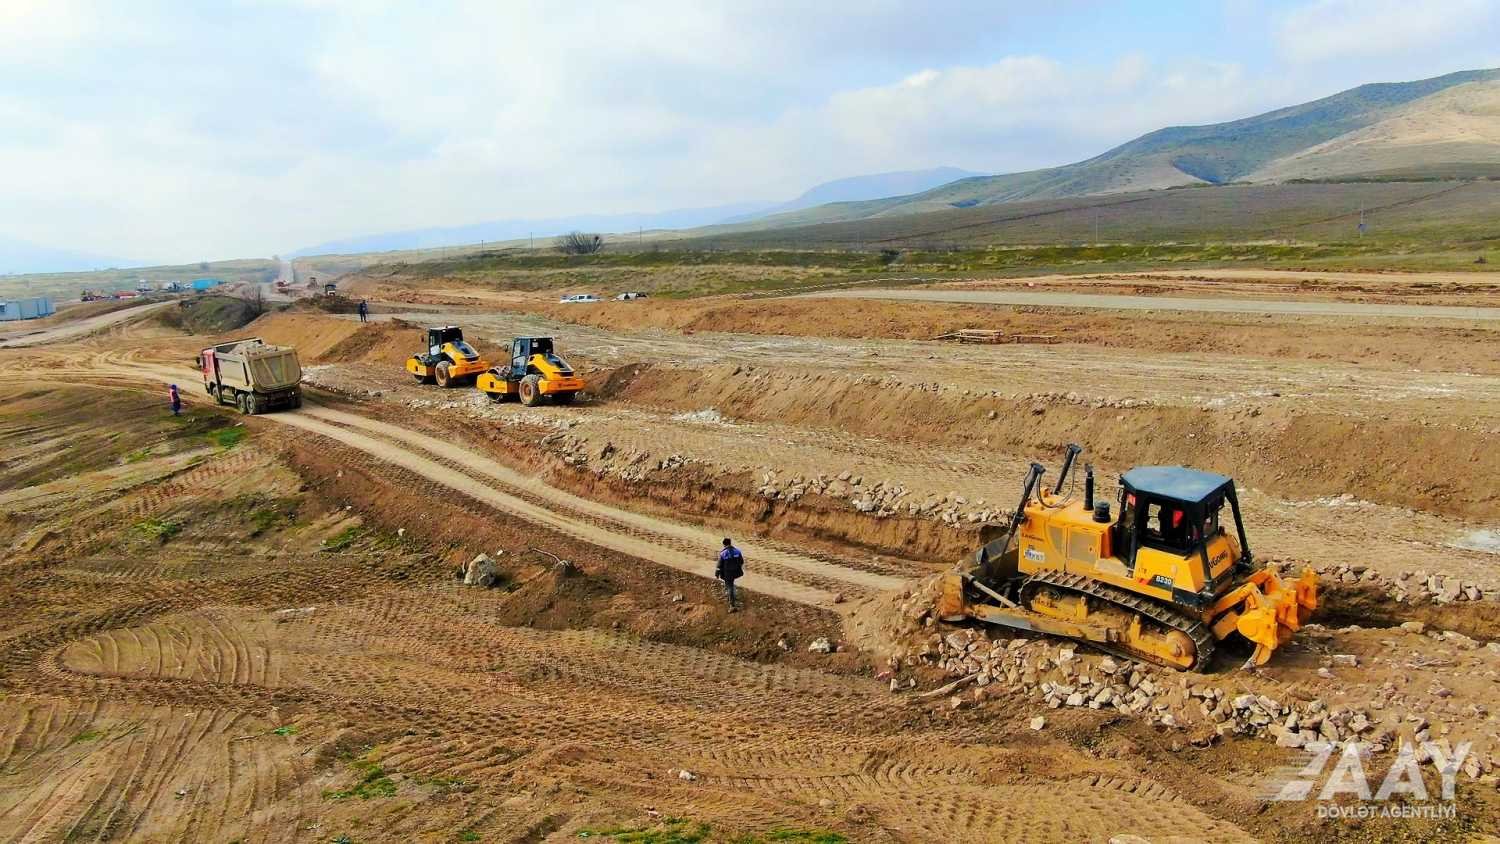 Əsgəran avtomobil yolunun inşasına başlanıldı (FOTO)